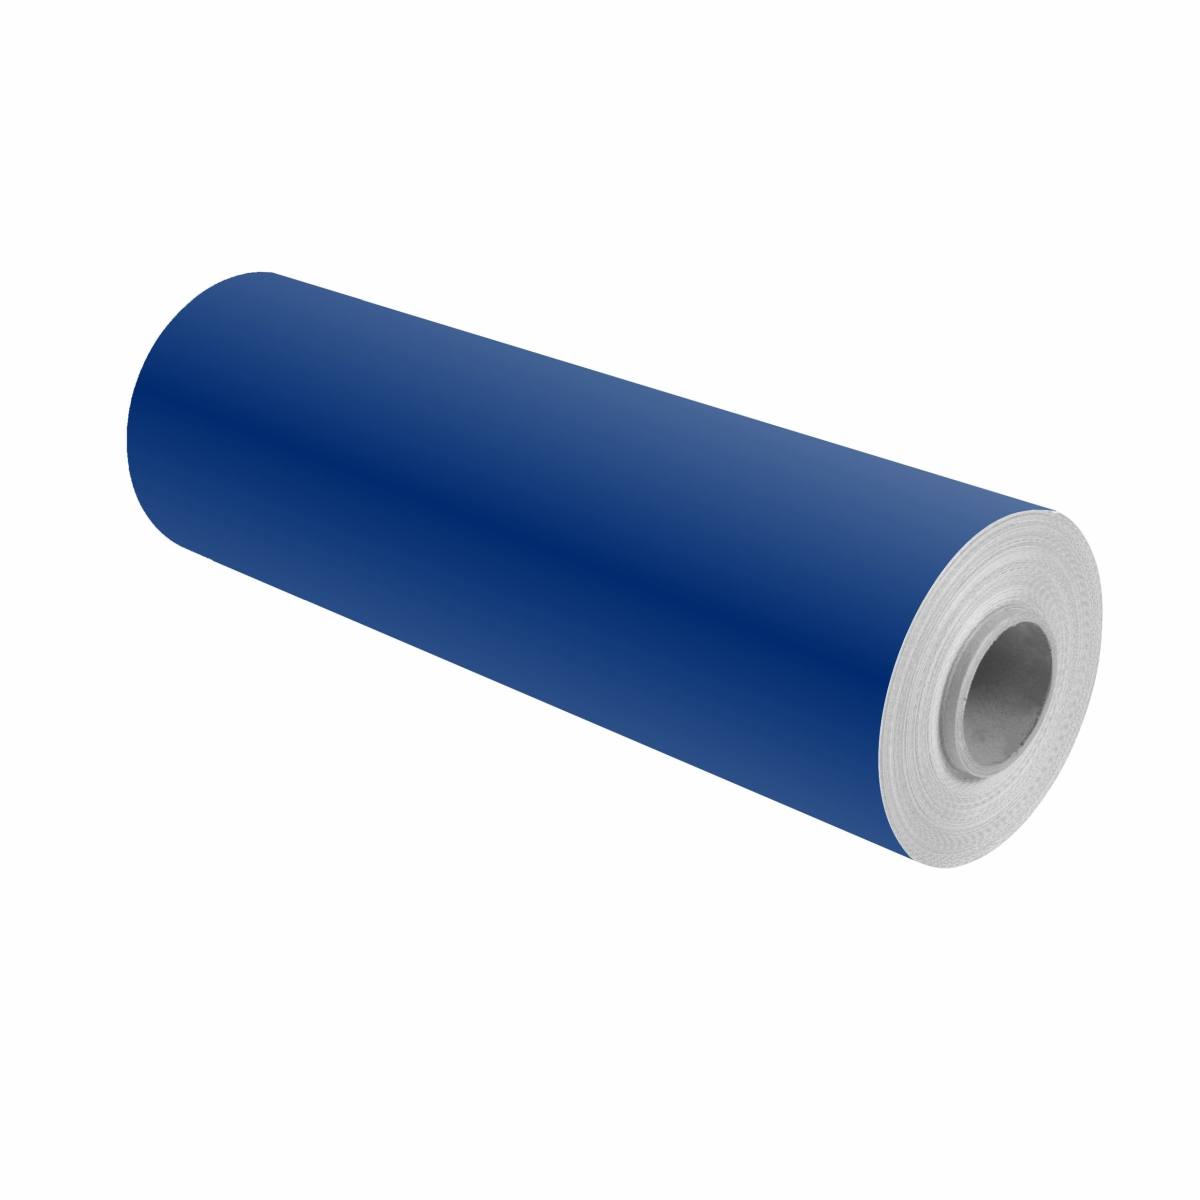 3M Scotchcal pellicola colorata 100-37 blu oltremare 1,22 m x 25 m